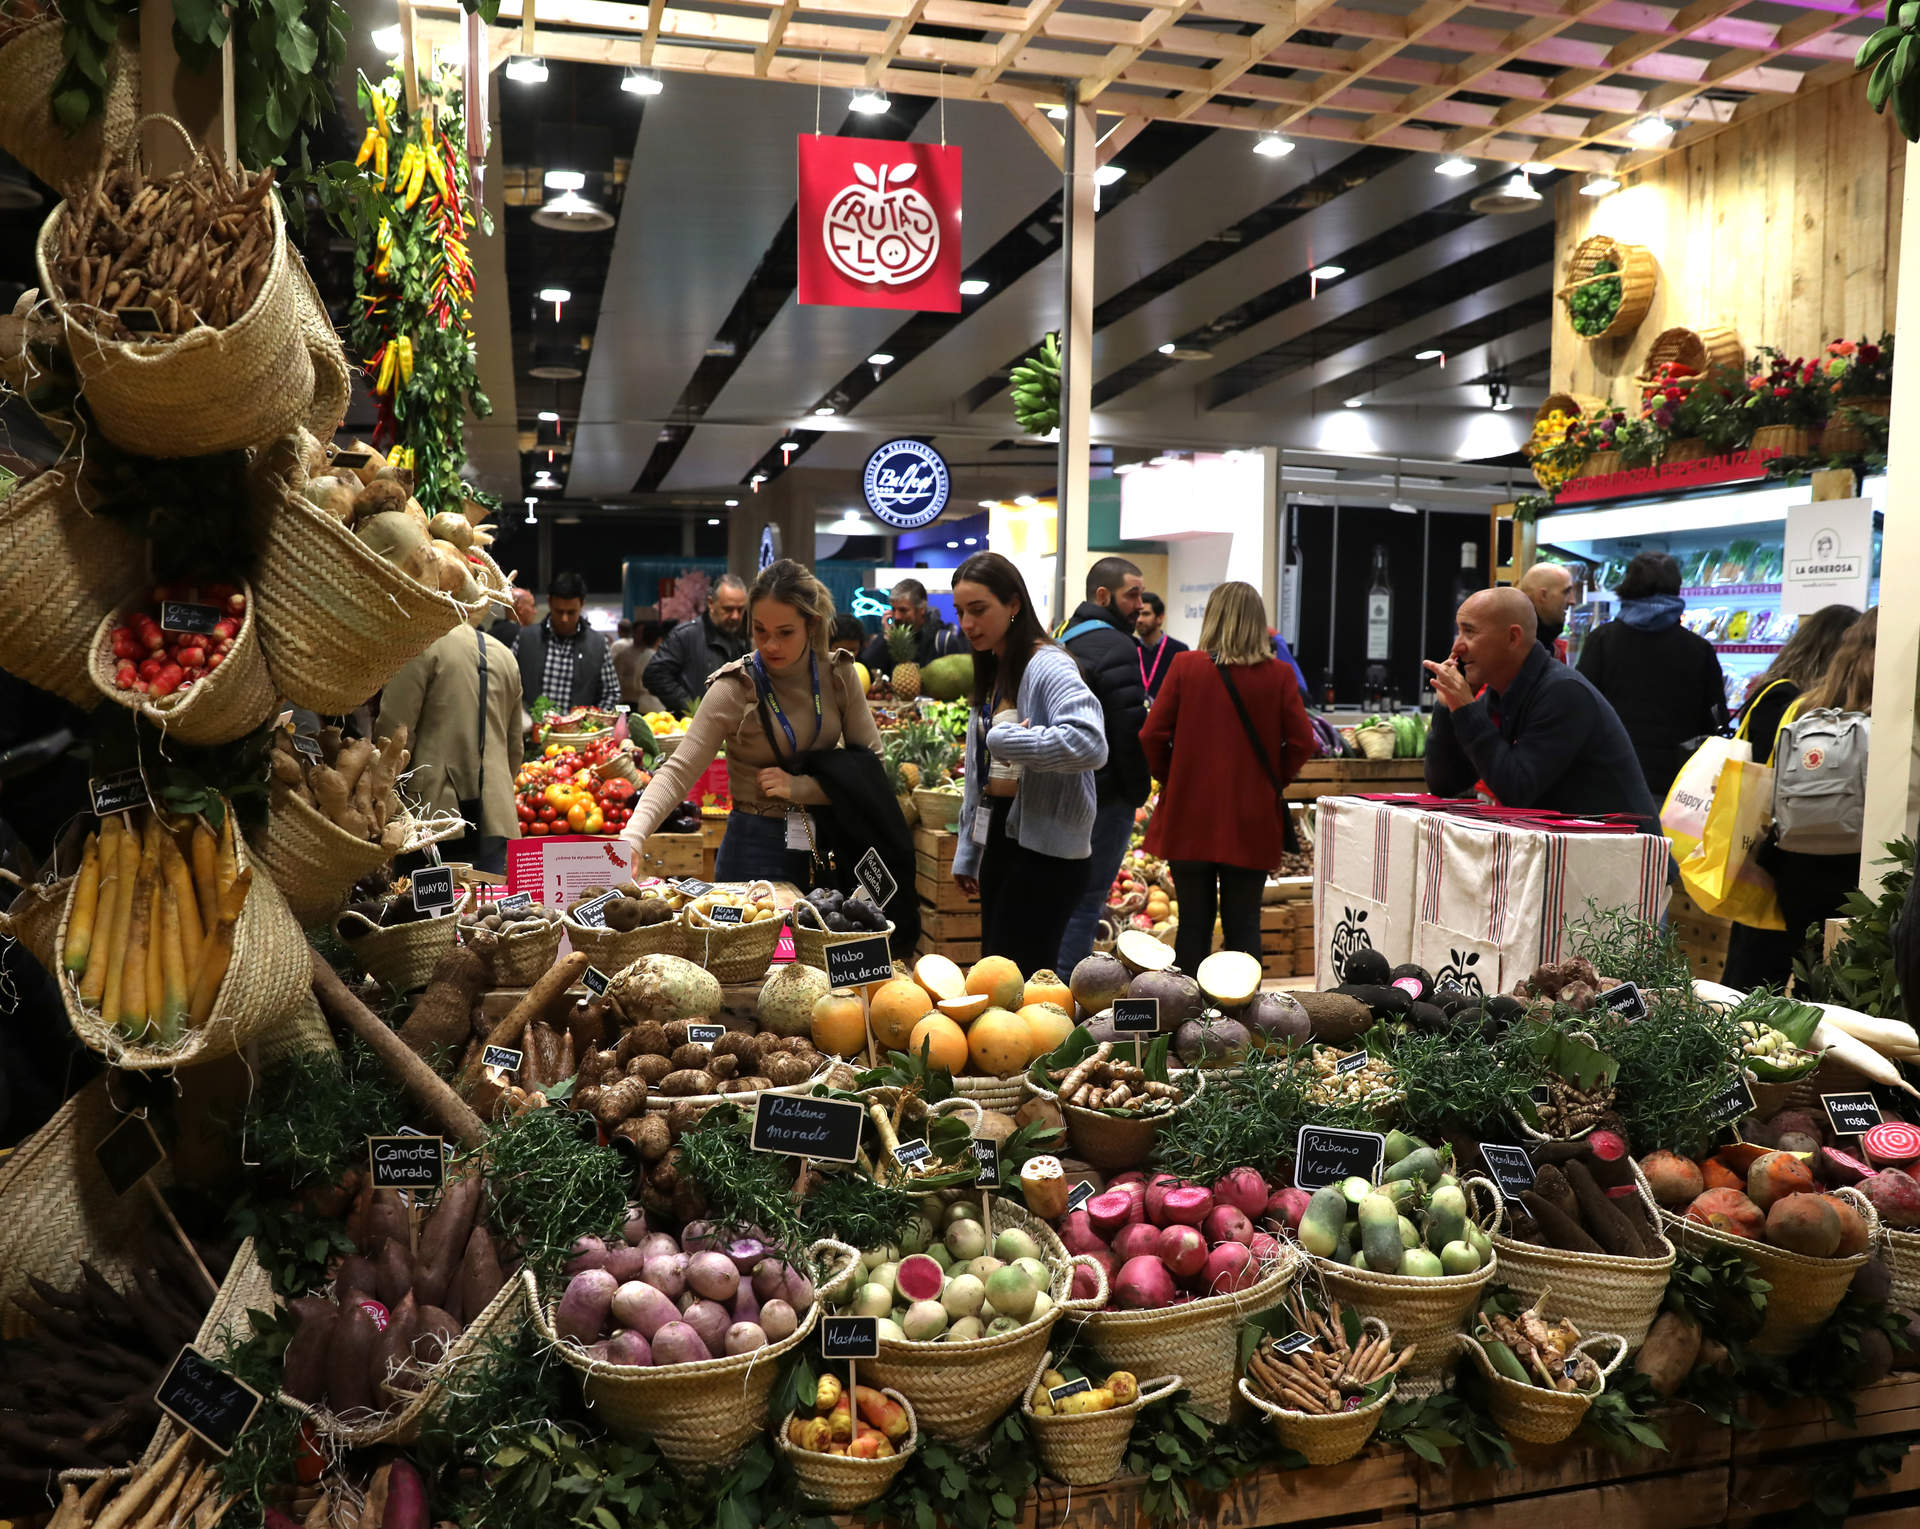 El 68% de los consumidores prioriza el precio en sus compras de frutas y hortalizas y un 70% el aspecto